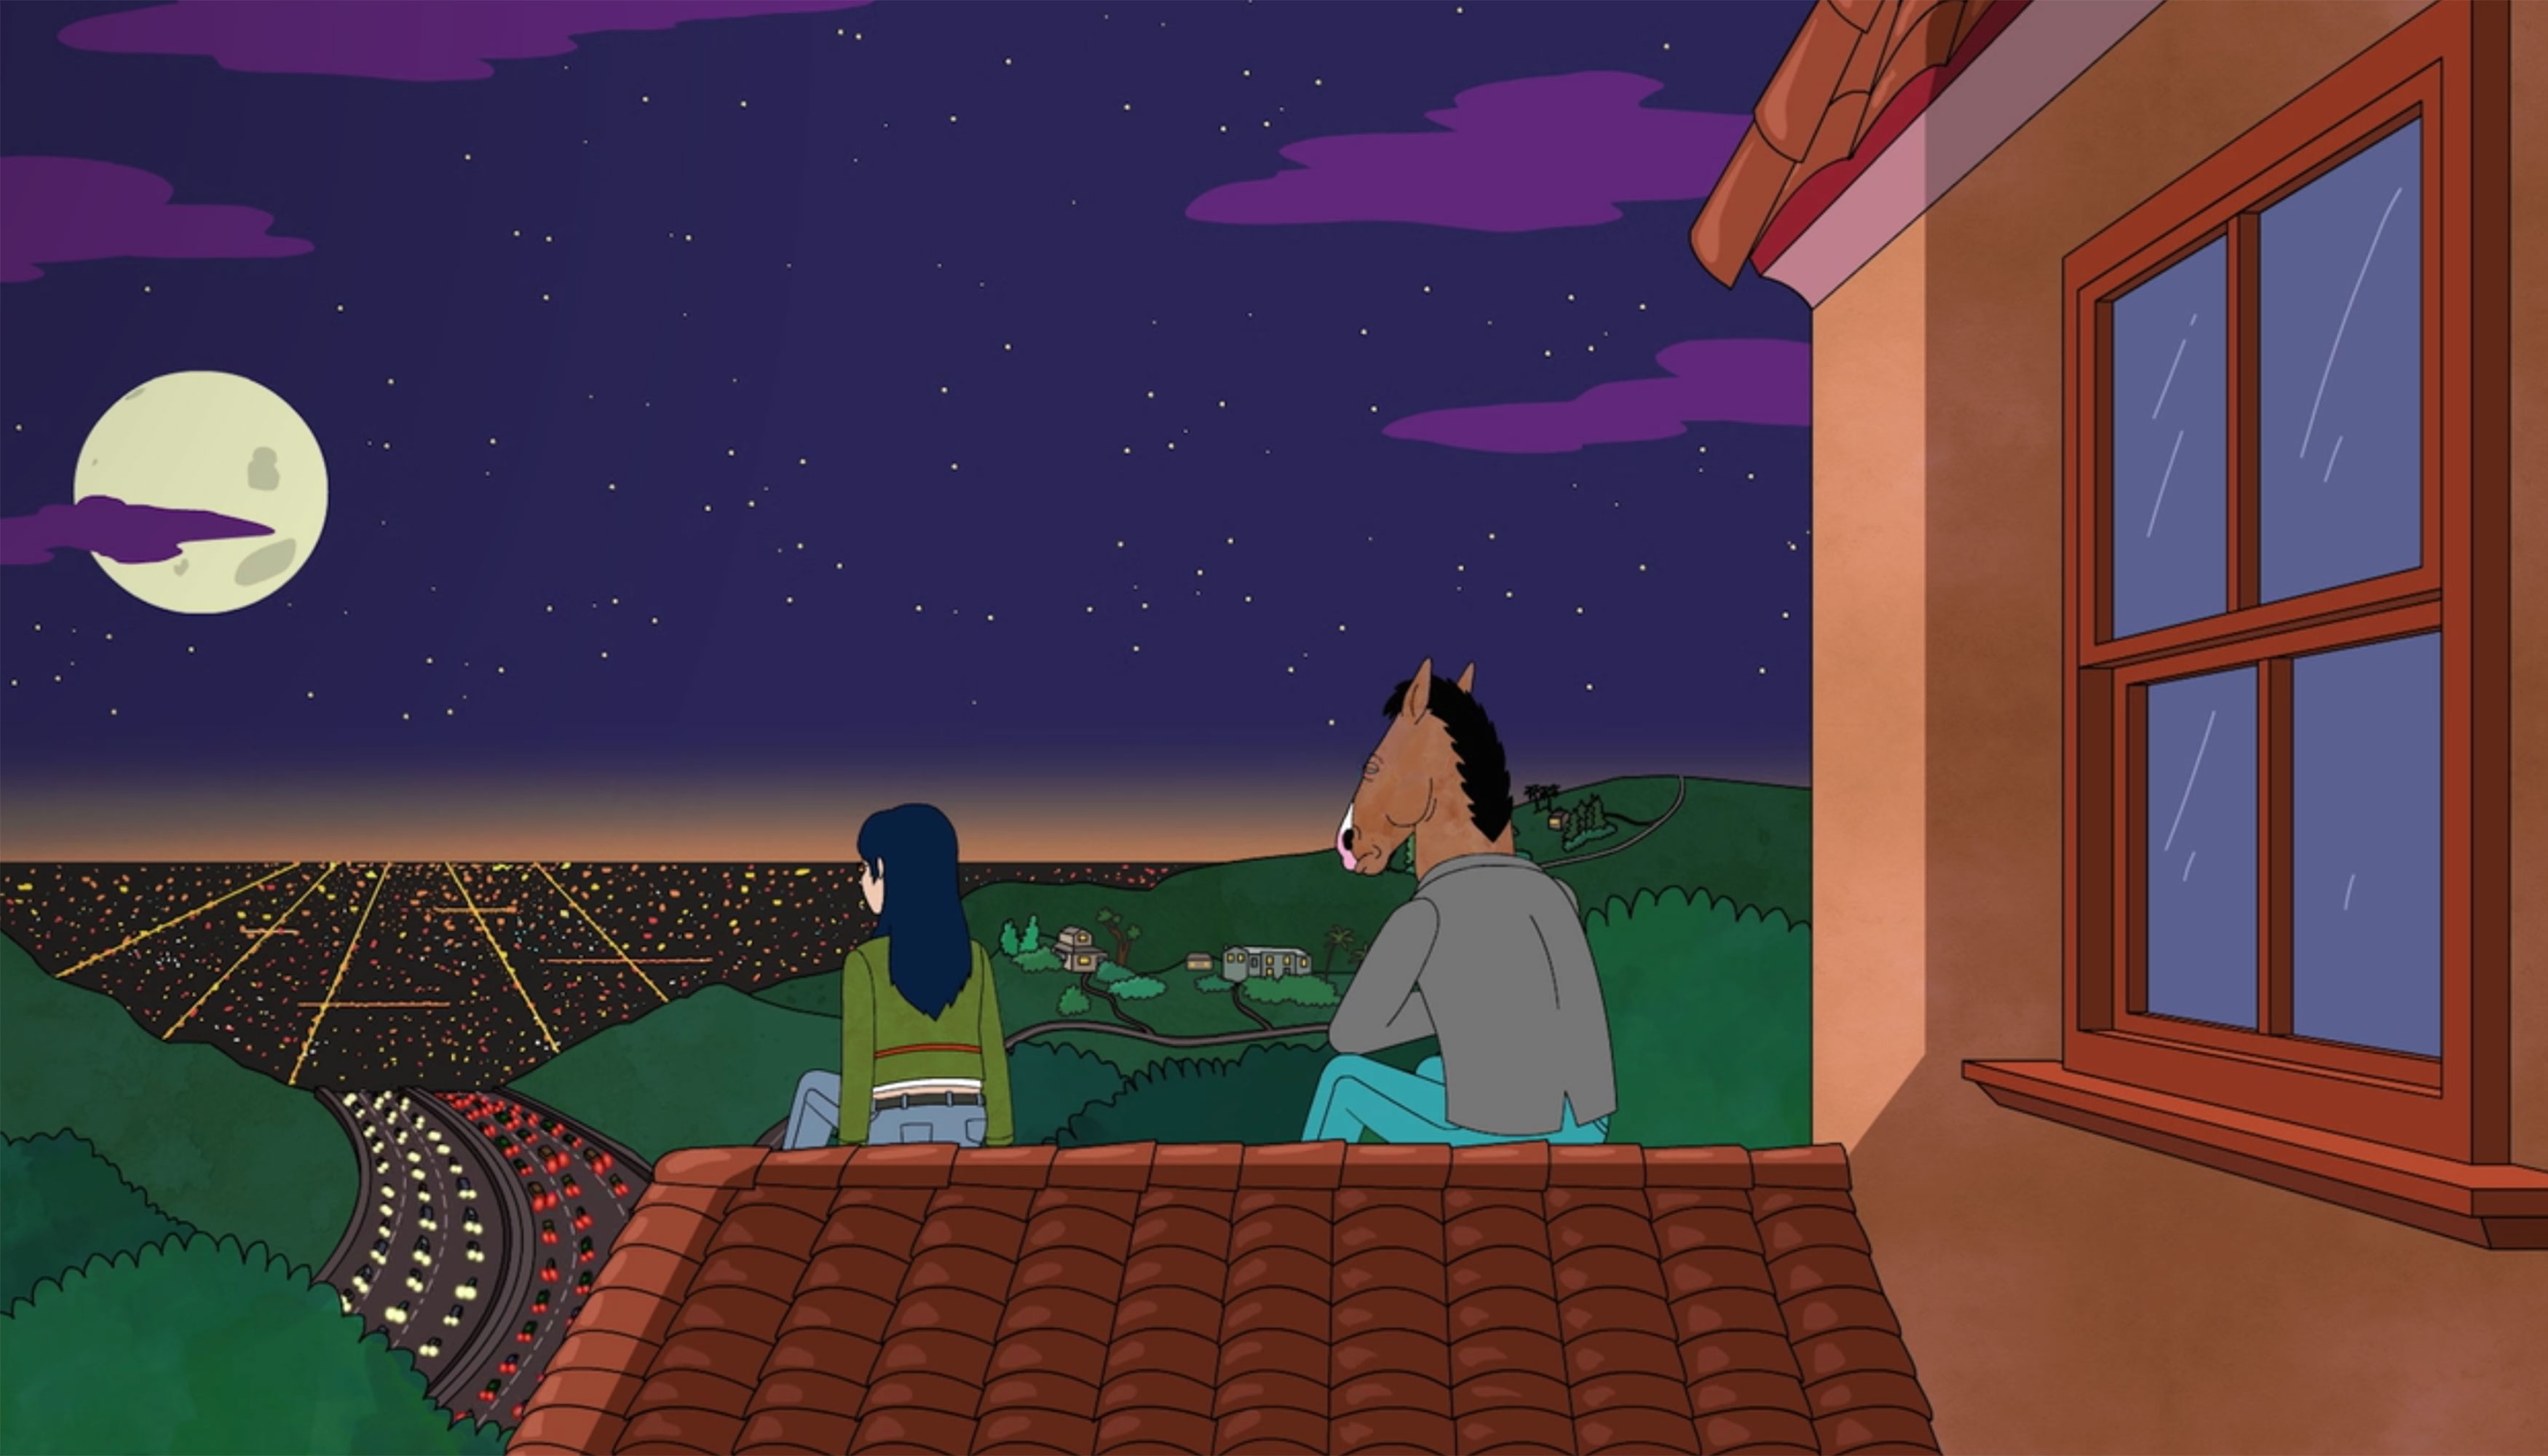 仍来自Netflix系列Bojack骑士。Bojack和朋友坐在房子的屋顶上俯瞰洛杉矶的城市景观。这是晚上，天空中有一个满月和星星。